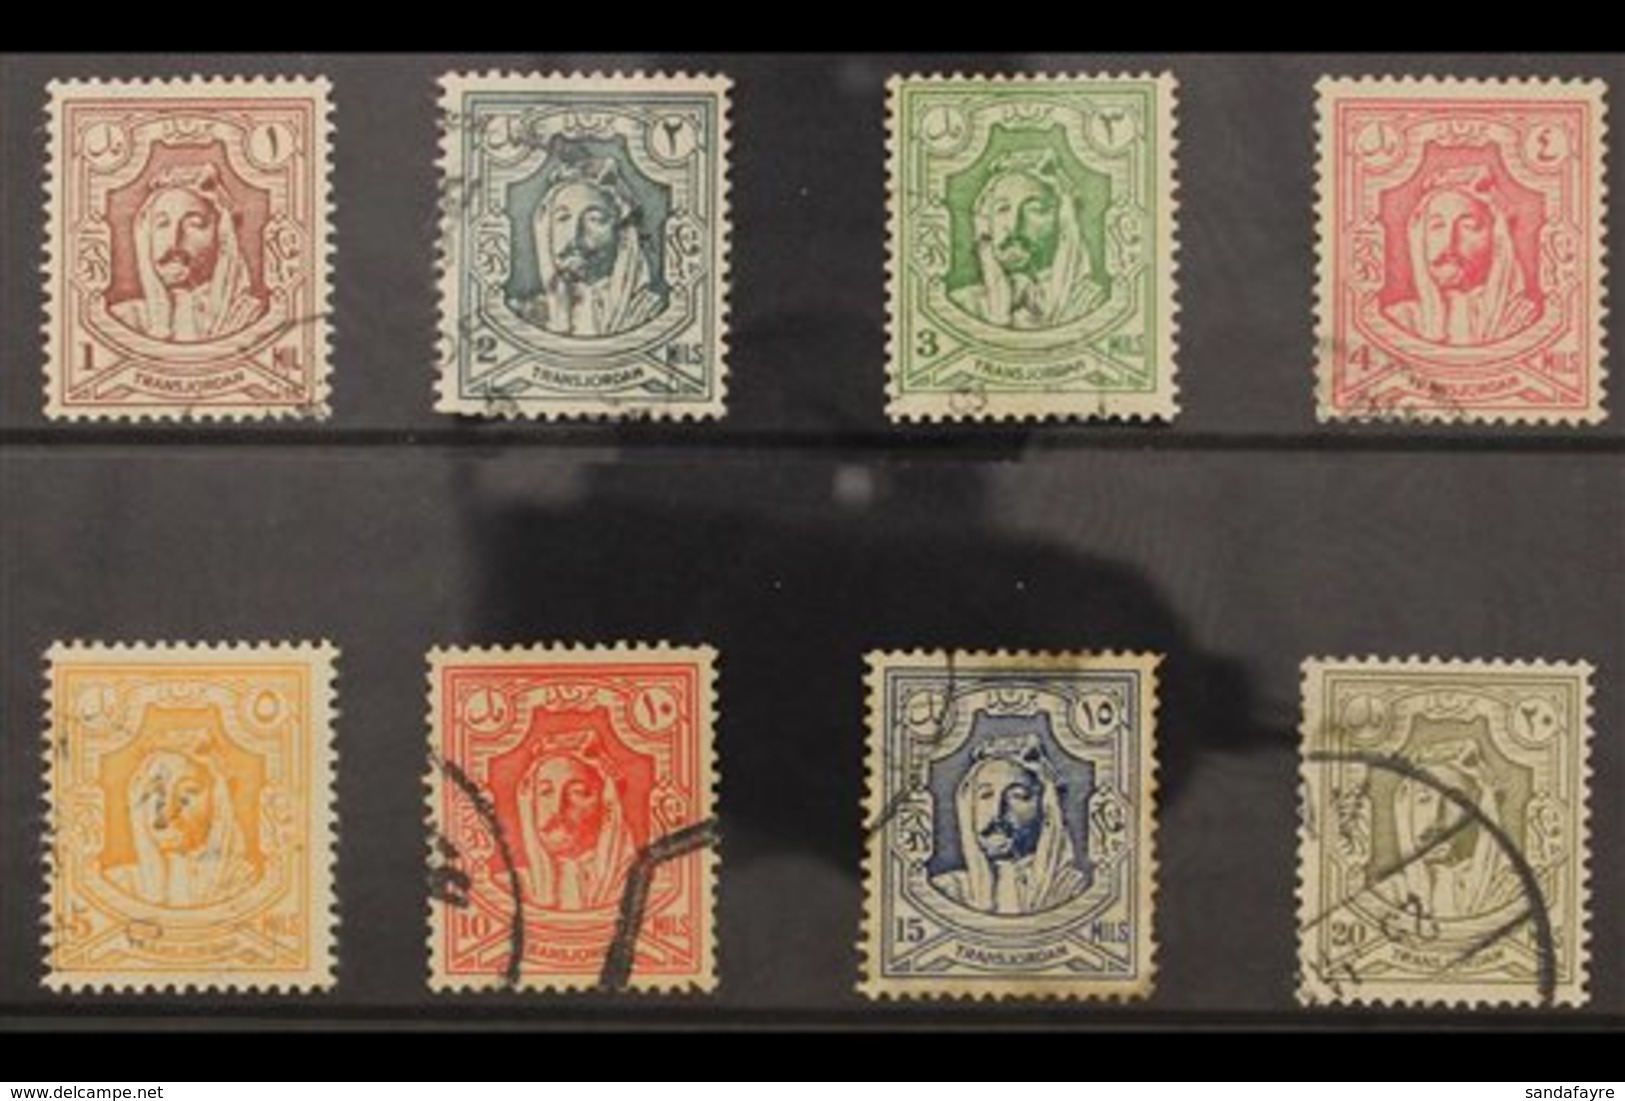 1942 Emir Set, SG 222/29, Used (8 Stamps) For More Images, Please Visit Http://www.sandafayre.com/itemdetails.aspx?s=648 - Jordanien